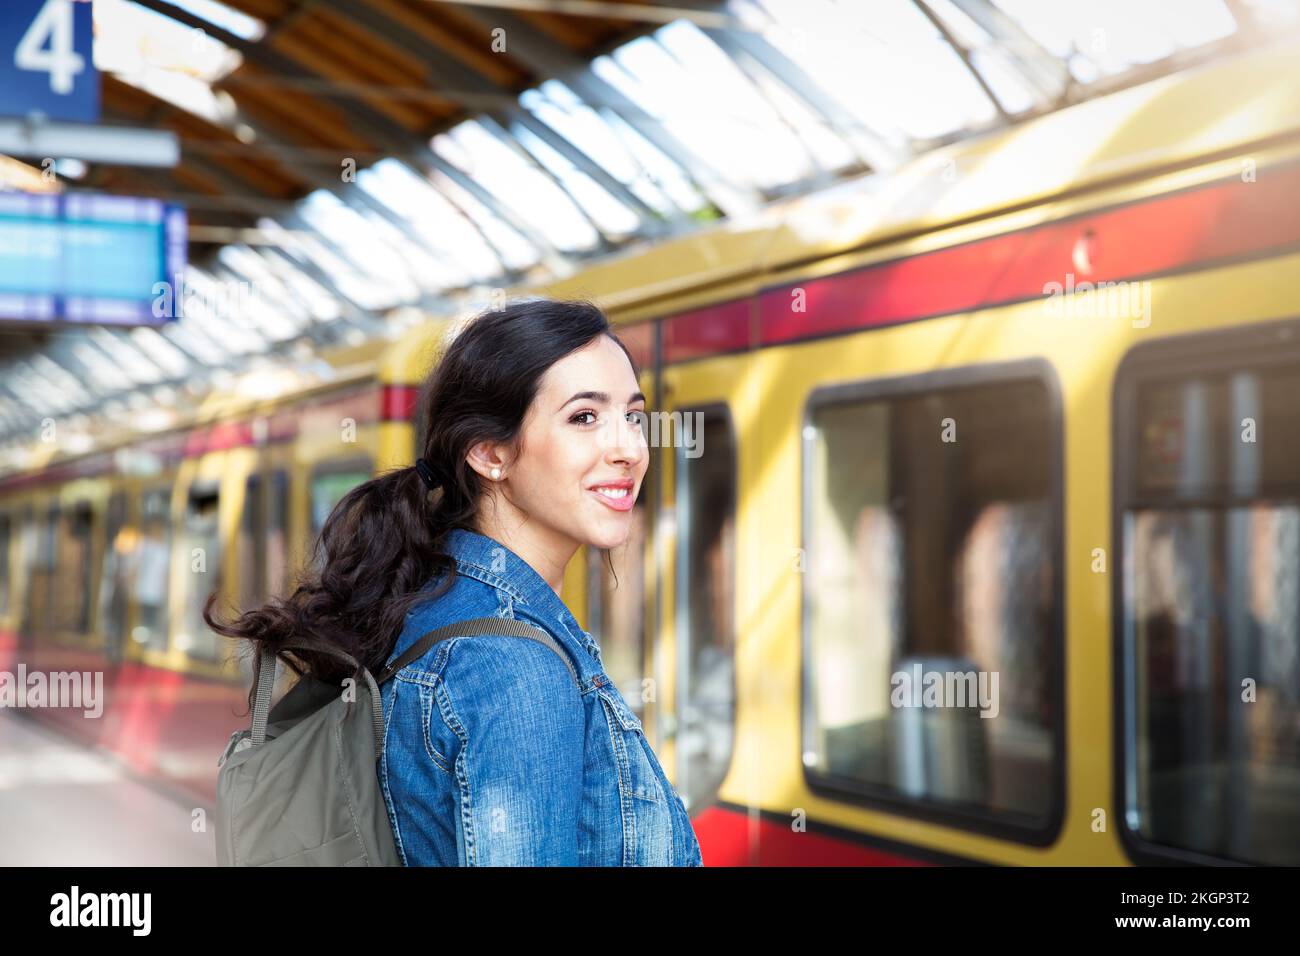 Deutschland, Berlin, junge Frau, die vor dem Zug wartet Stockfoto